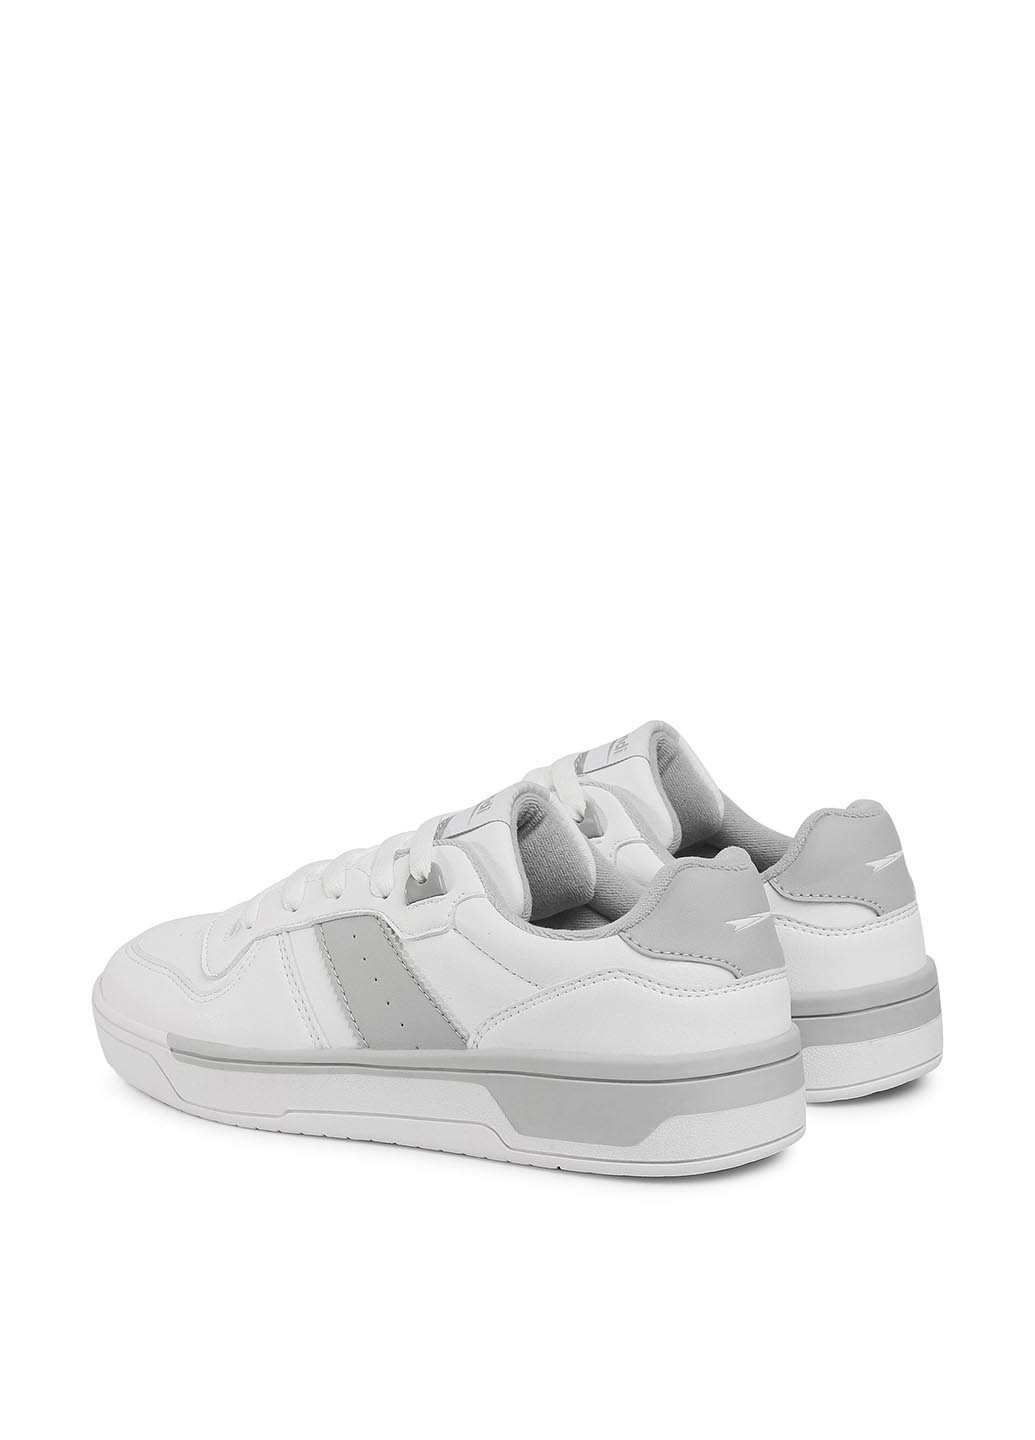 Белые кросівки Sprandi MP40-20152Y